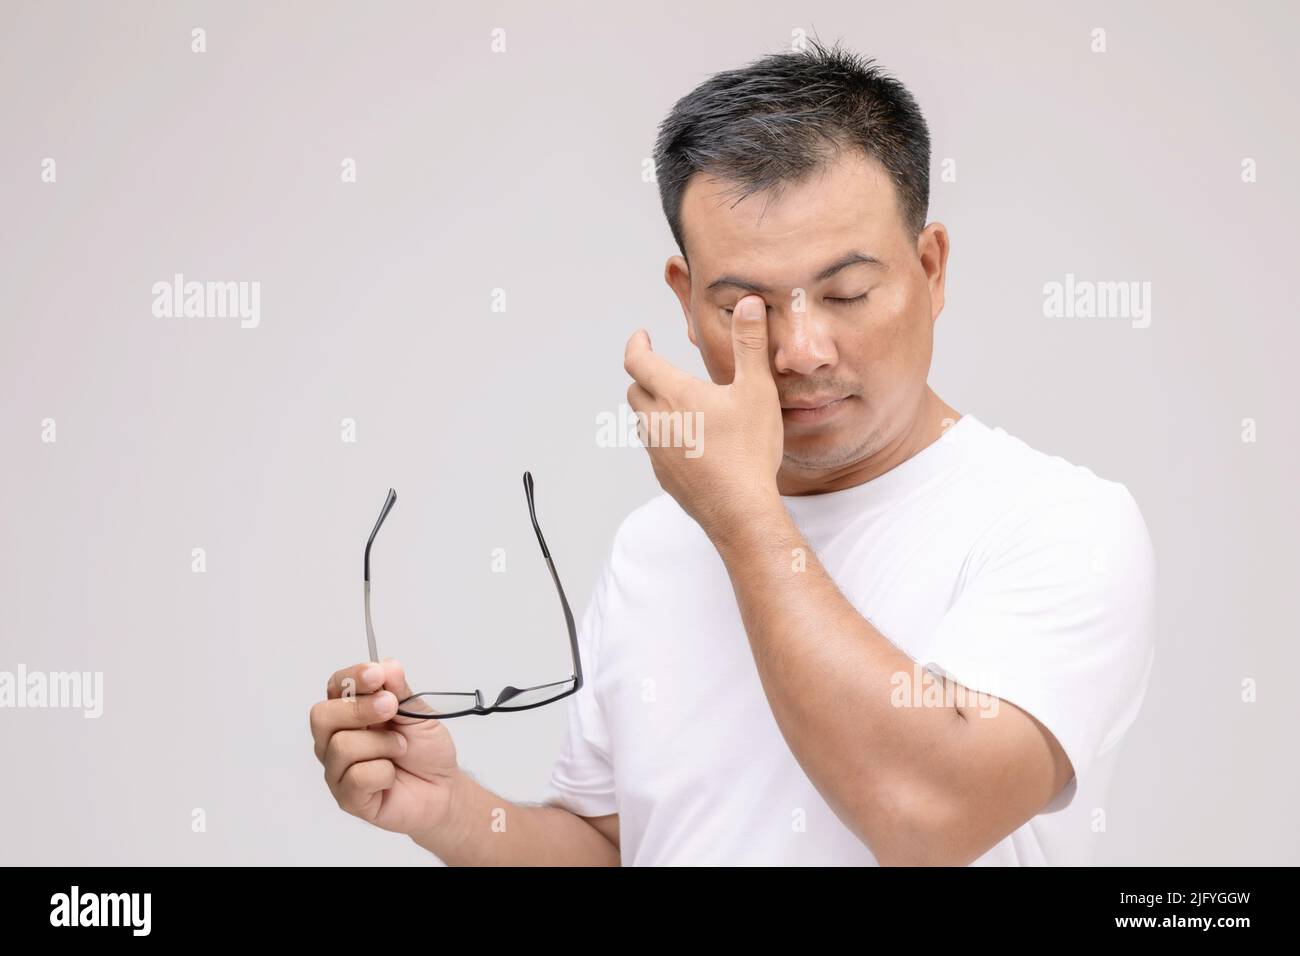 Augenreizung Konzept : Porträt des asiatischen Mannes in der Haltung der Augen müde, Reizung oder Problem über sein Auge. Studioaufnahme isoliert auf grauem Hintergrund Stockfoto